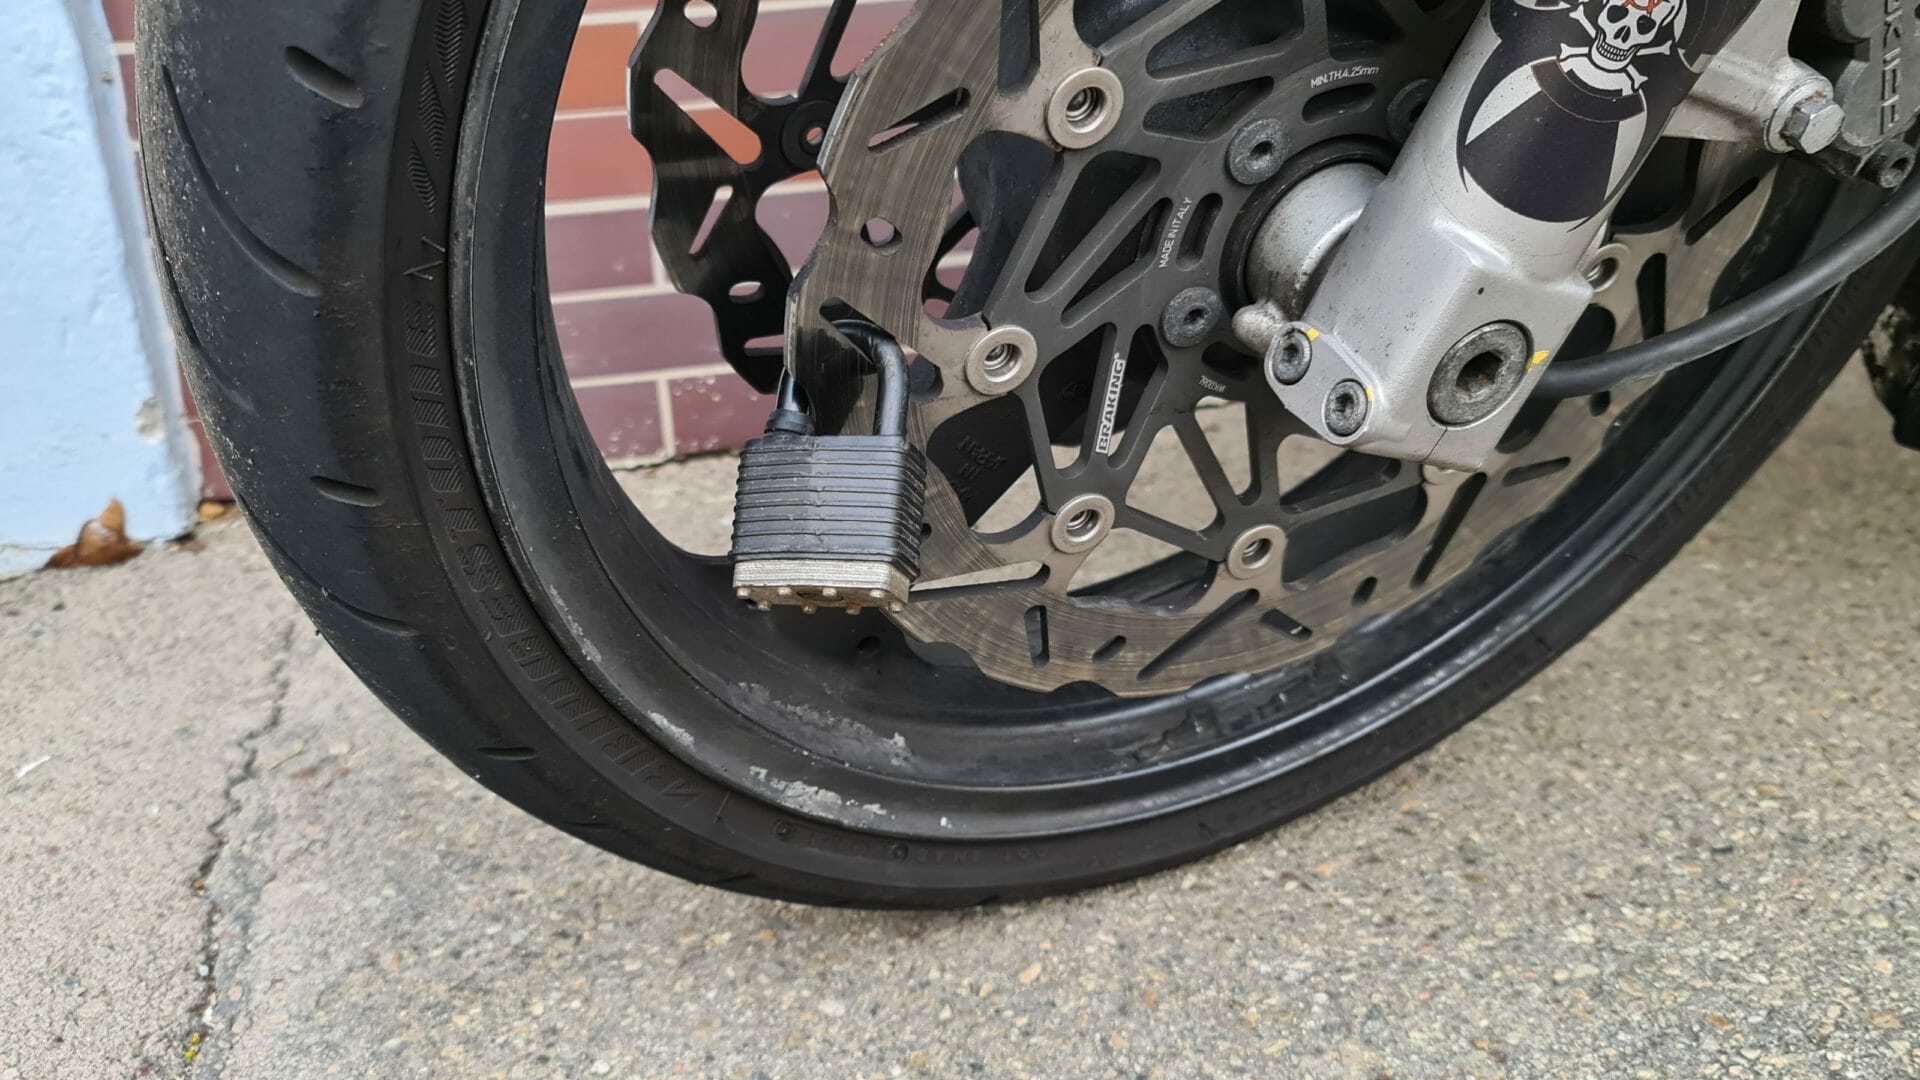 Dangerous sabotage: padlocks on motorcycle brake discs in Emden